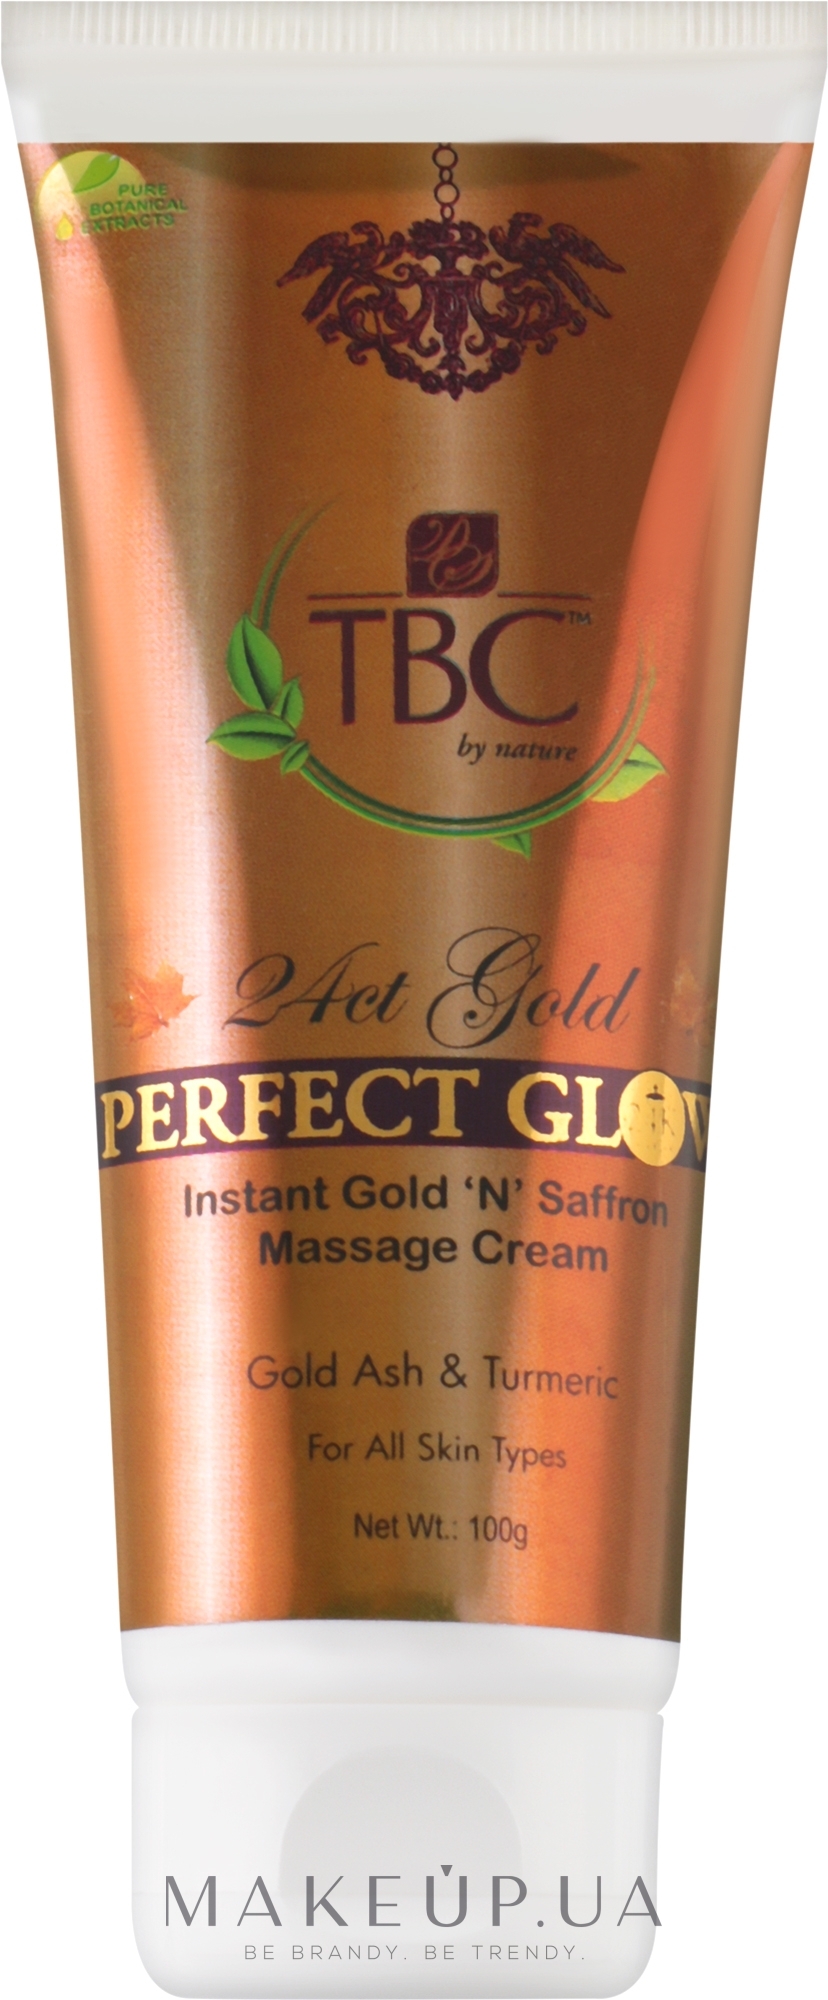 Масажний крем для обличчя "Золото і шафран" - TBC 24ct Gold Perfect Glow Cream - TBC 24ct Gold Perfect Glow Cream — фото 100g